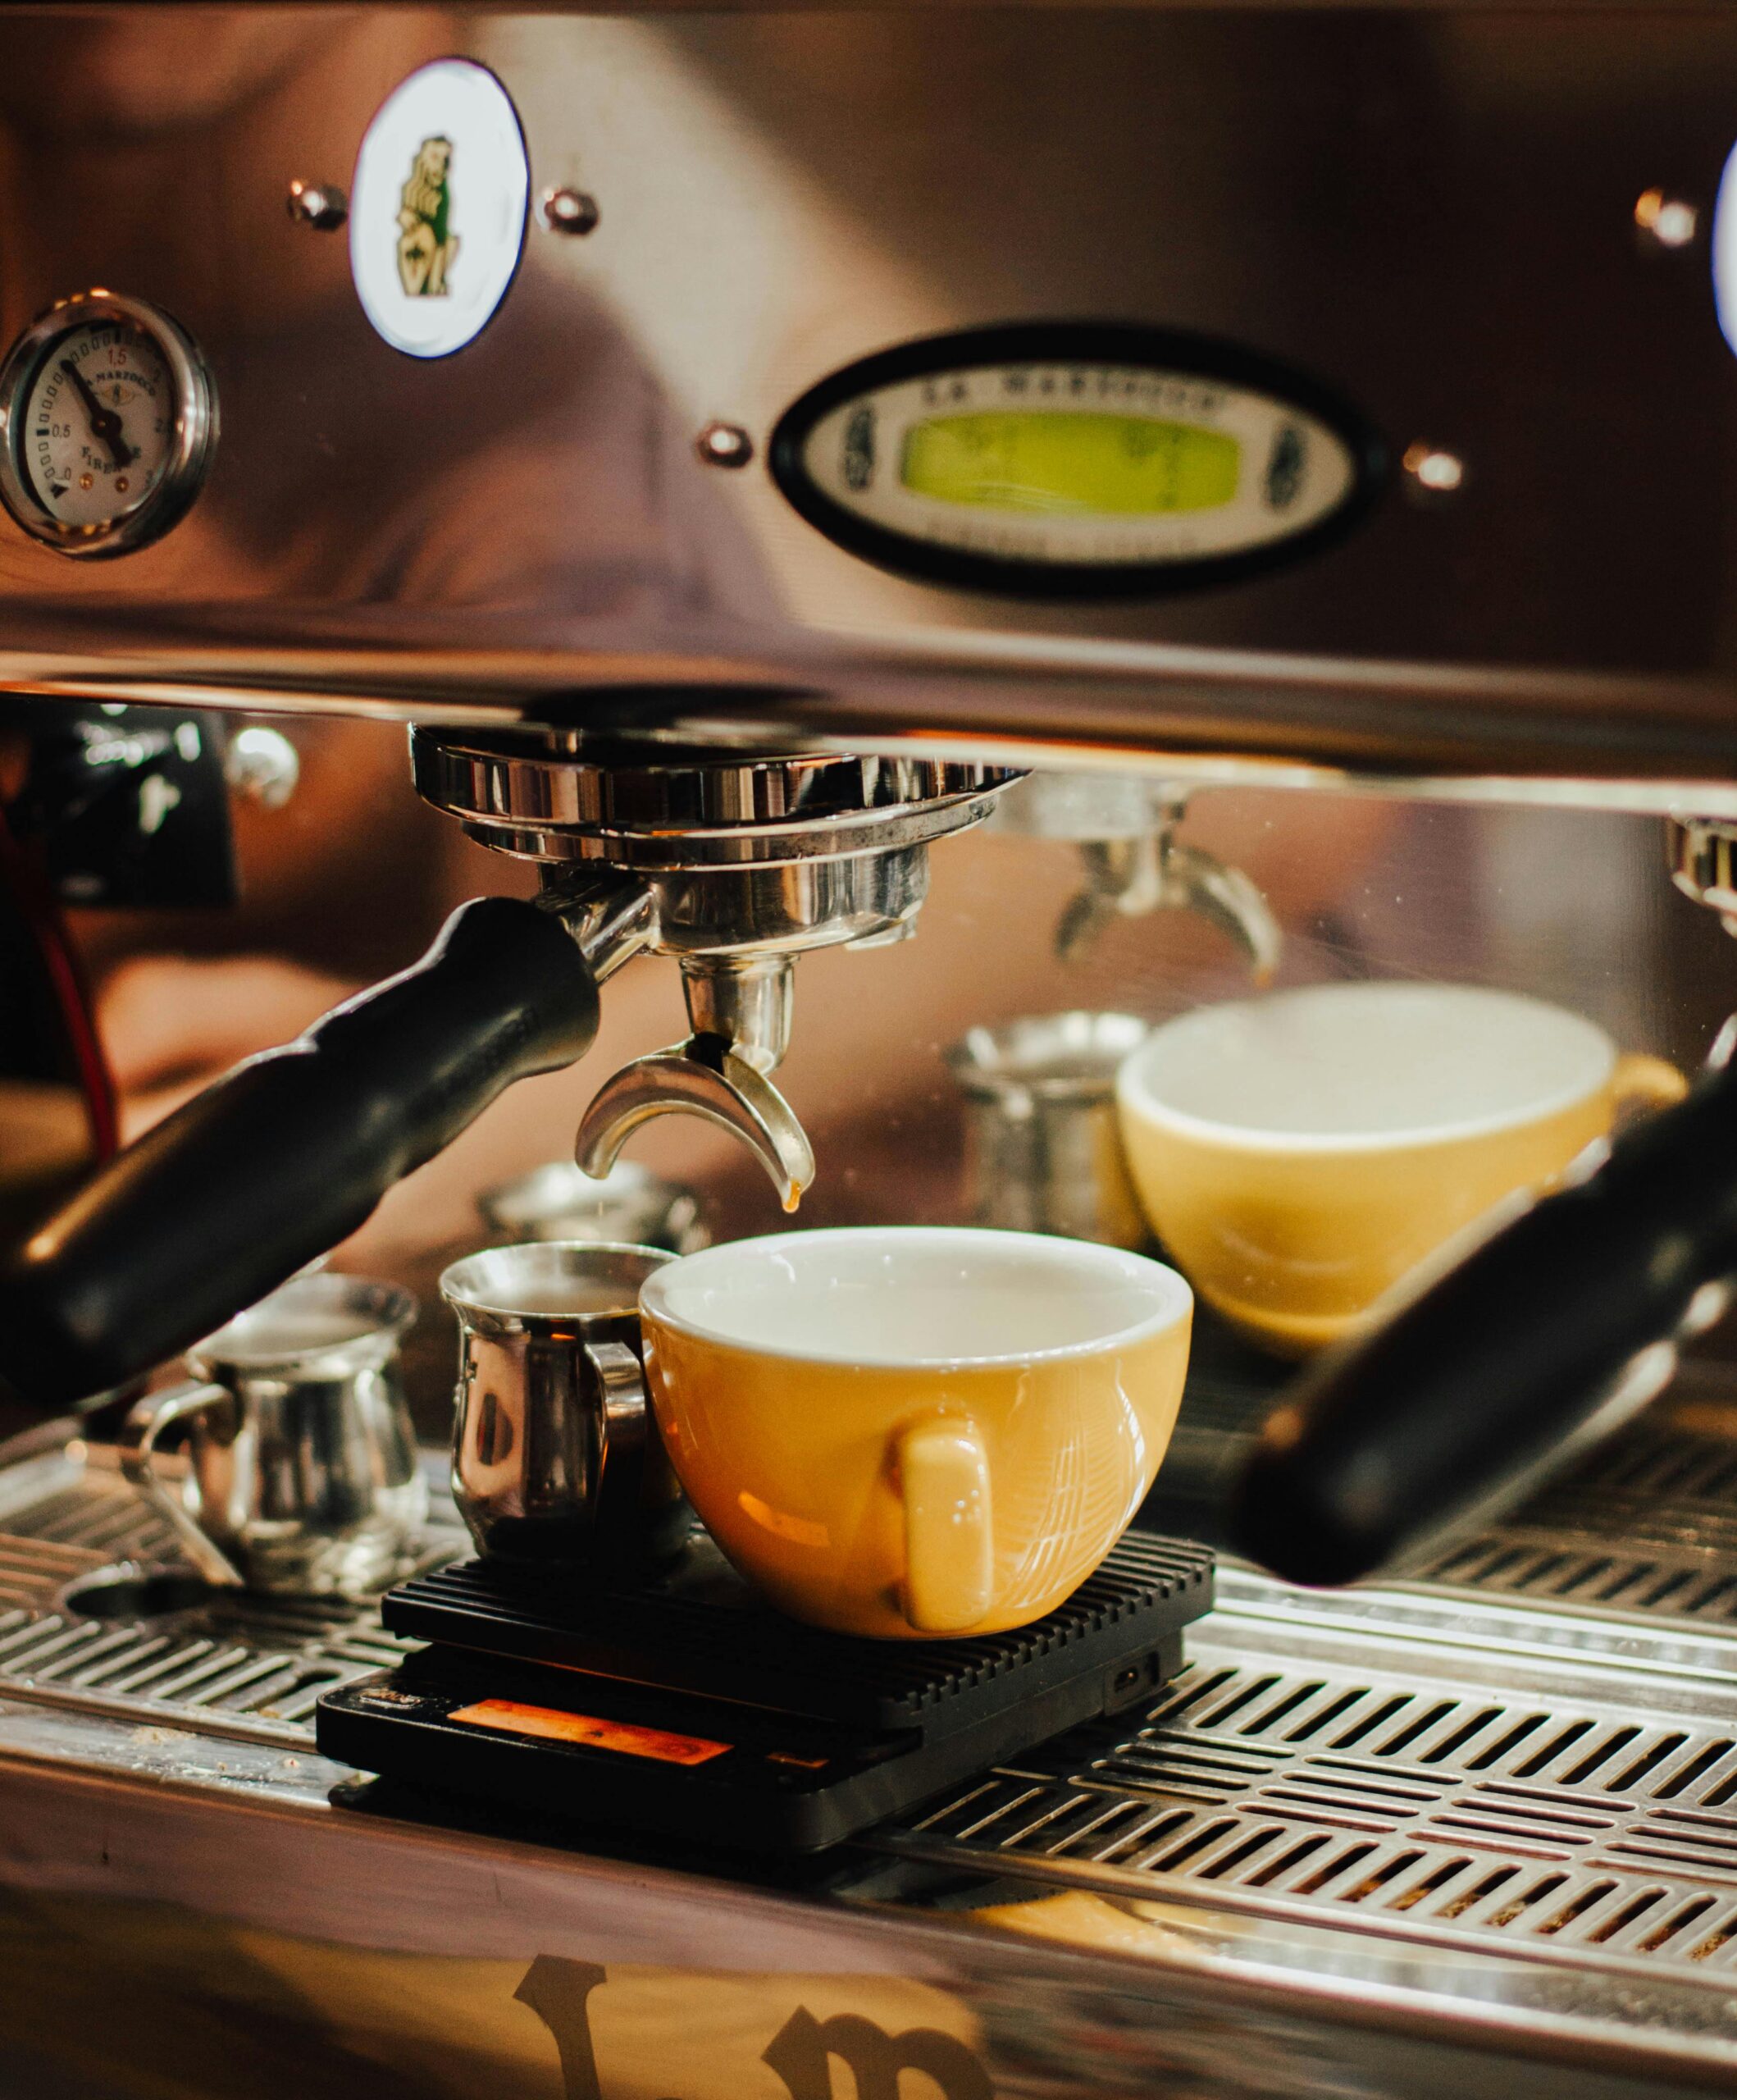 A La Marzocco espresso machine delivers espresso in two cups